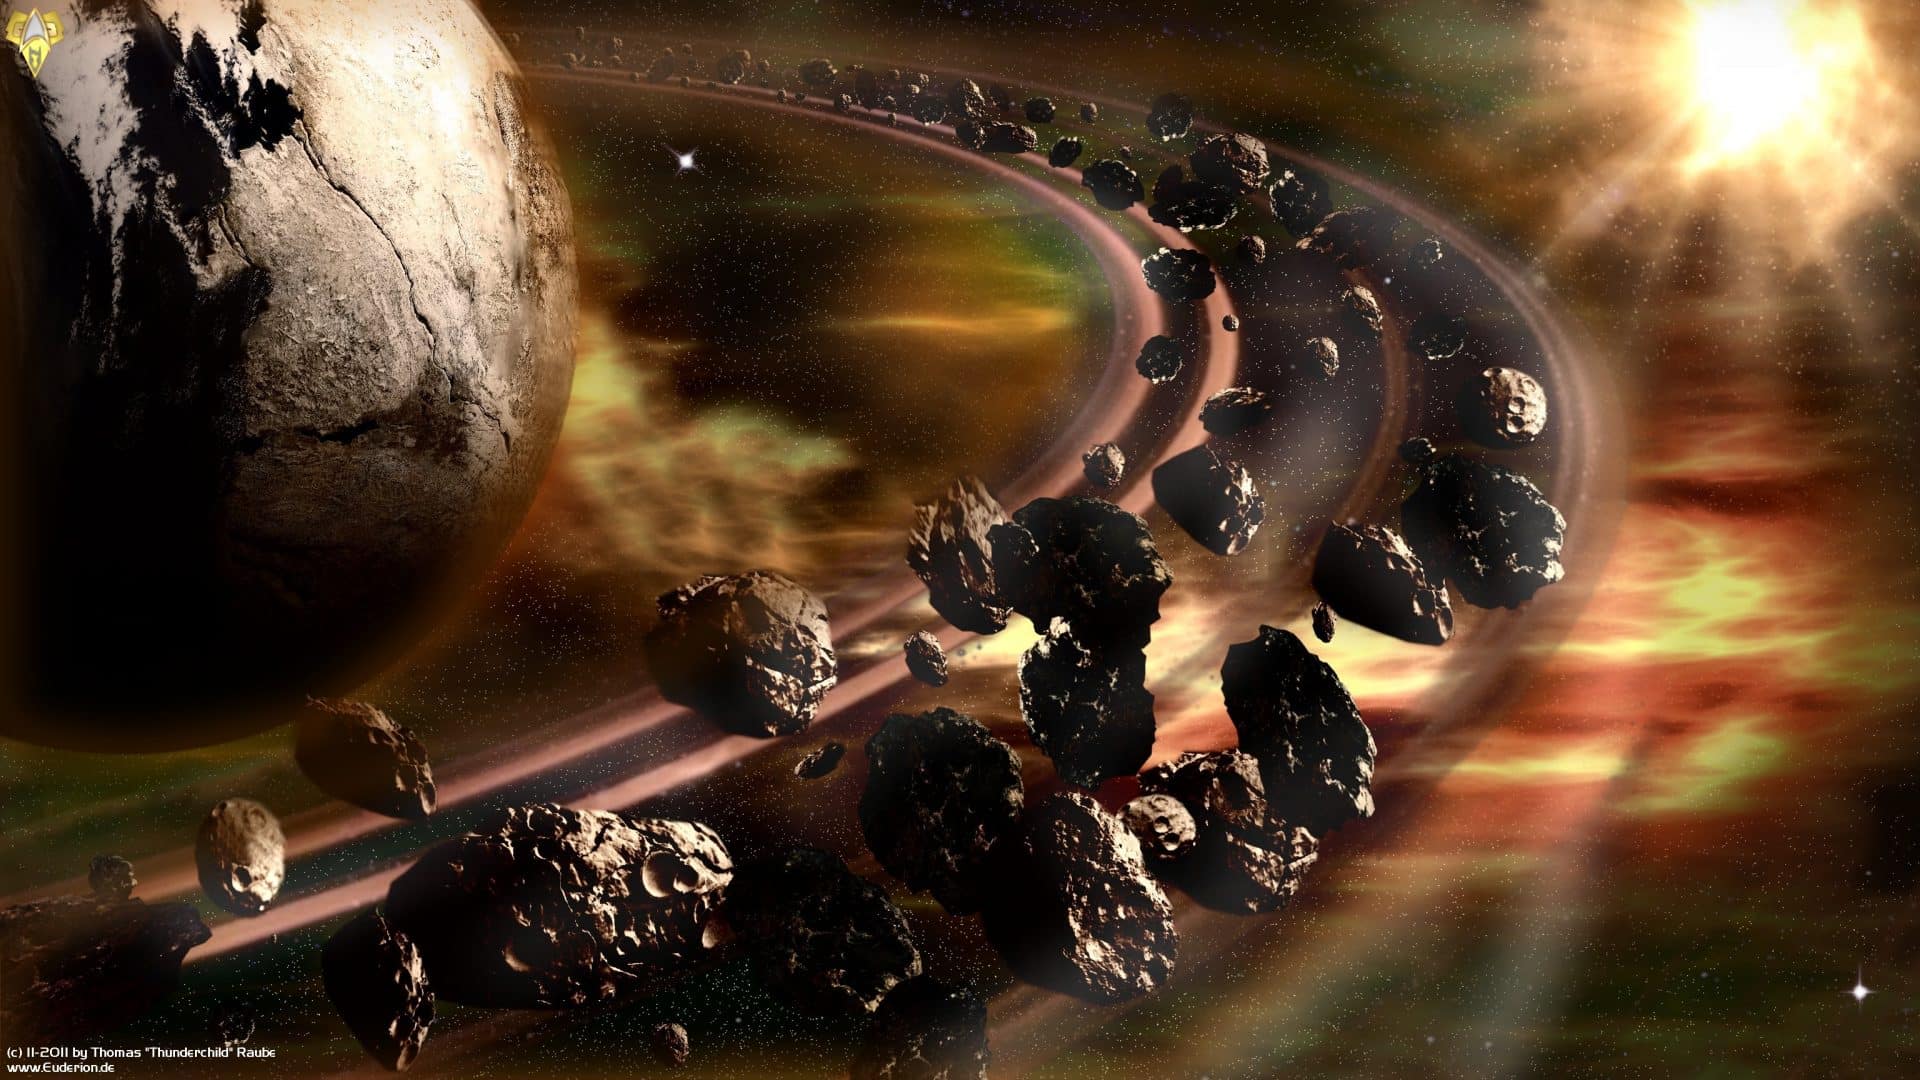 Asteroides - curiosidades, o que são e do que são formados?